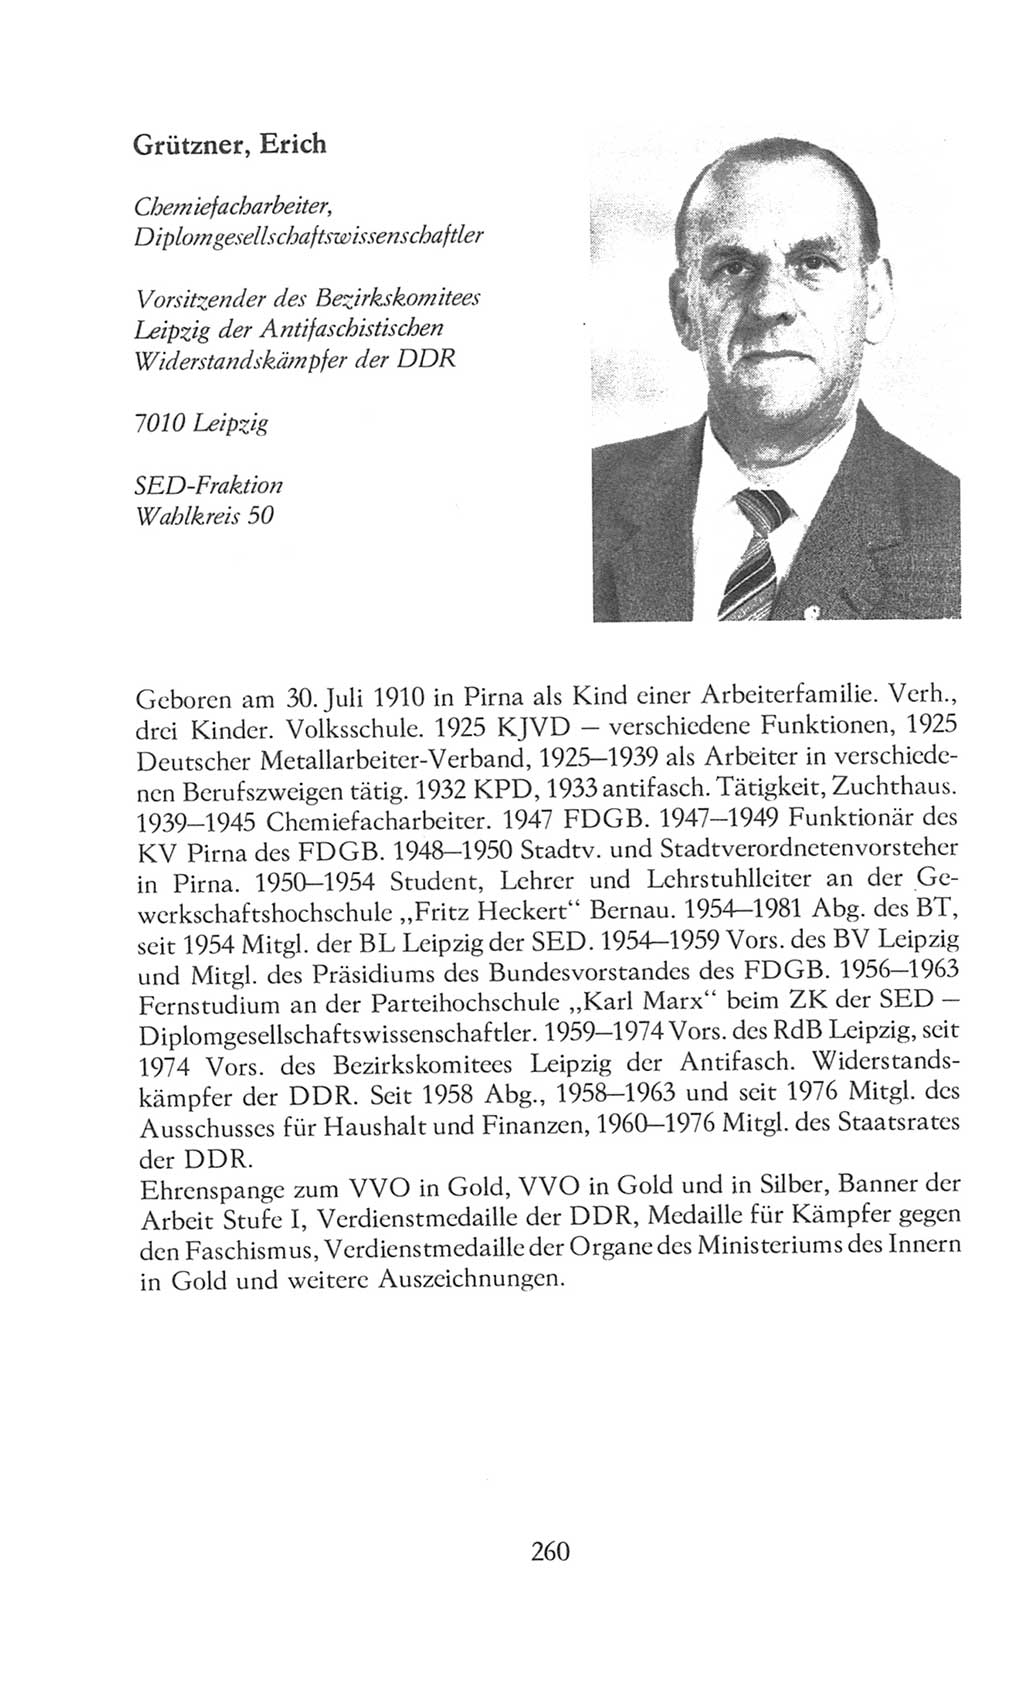 Volkskammer (VK) der Deutschen Demokratischen Republik (DDR), 8. Wahlperiode 1981-1986, Seite 260 (VK. DDR 8. WP. 1981-1986, S. 260)